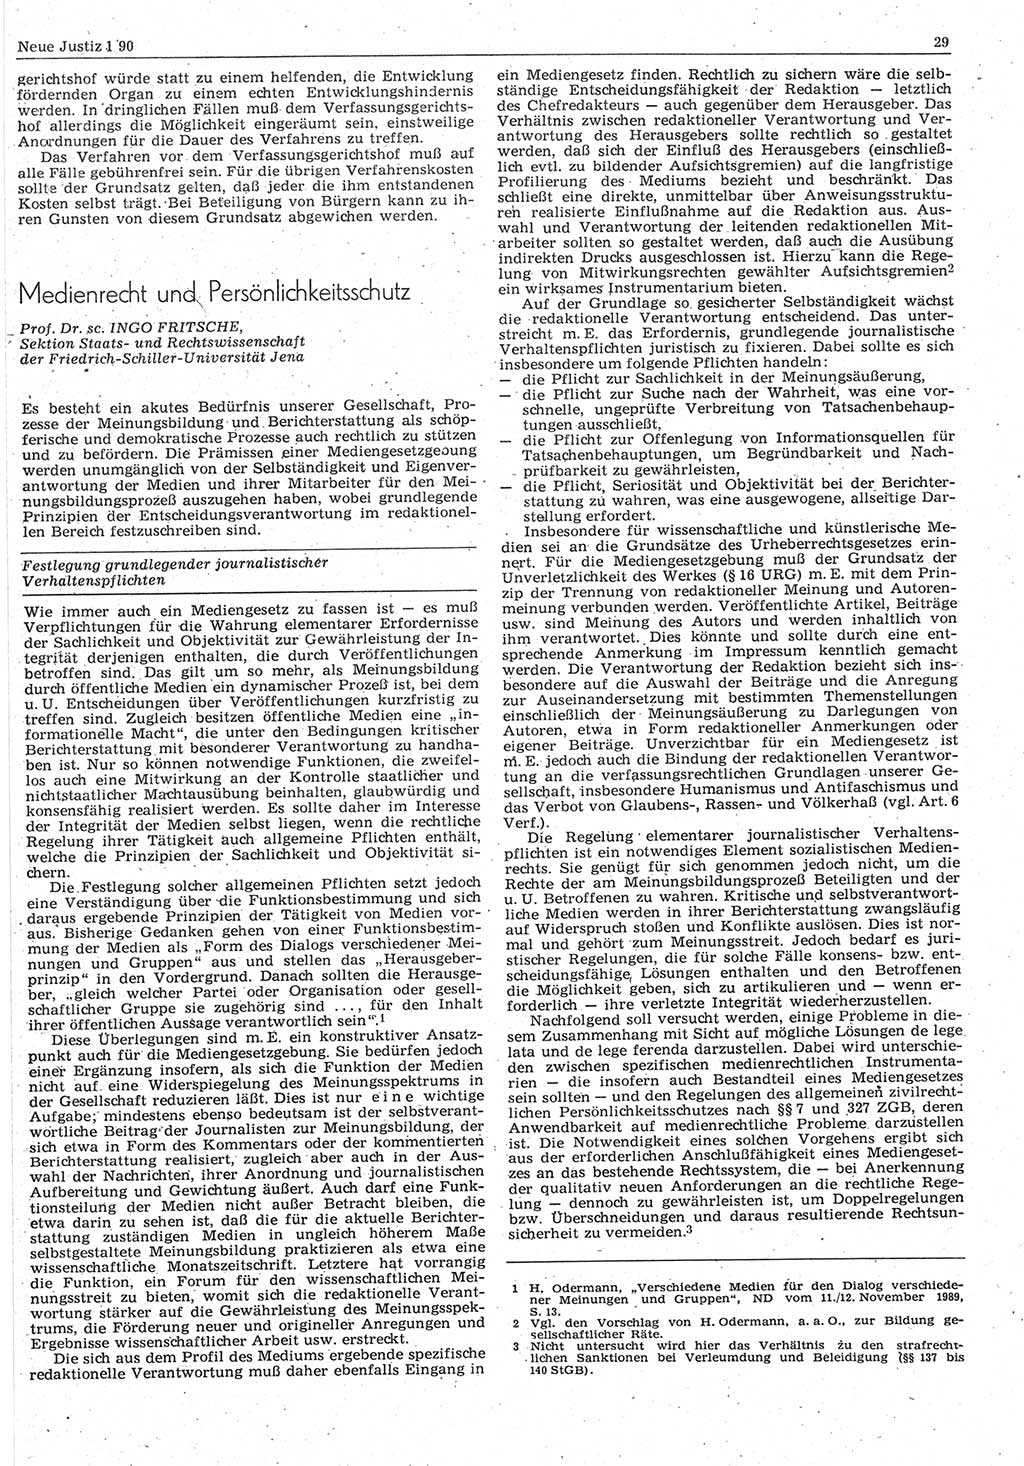 Neue Justiz (NJ), Zeitschrift für Rechtsetzung und Rechtsanwendung [Deutsche Demokratische Republik (DDR)], 44. Jahrgang 1990, Seite 29 (NJ DDR 1990, S. 29)